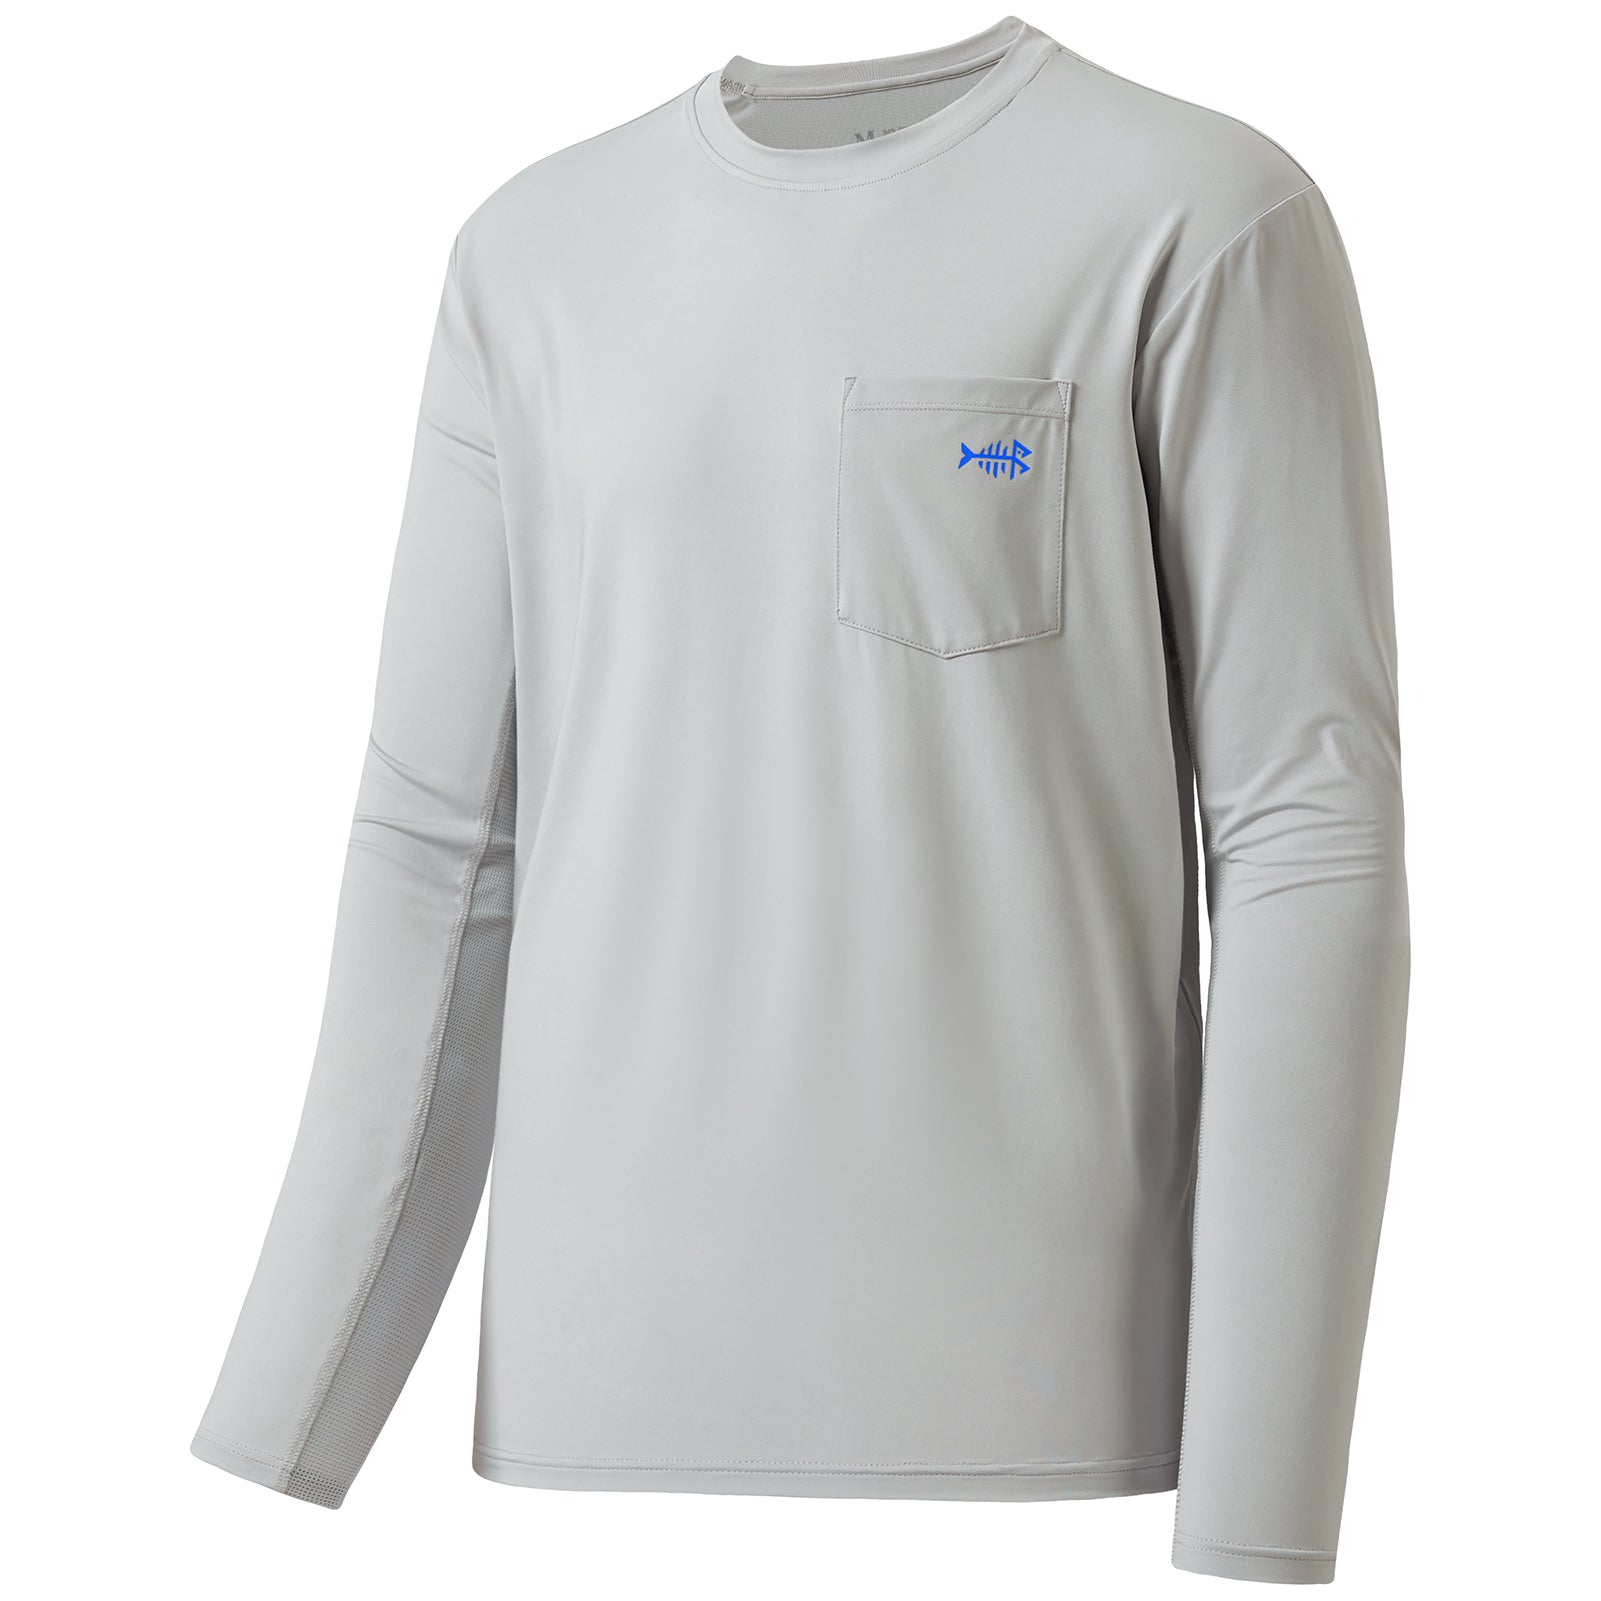 Uv Shirts for Men Long Sleeve Swimming Shirts Athletic Shirts Running Shirts  Workout Shirts Sun Shirts Hiking Shirts for Men with Hood Apricot